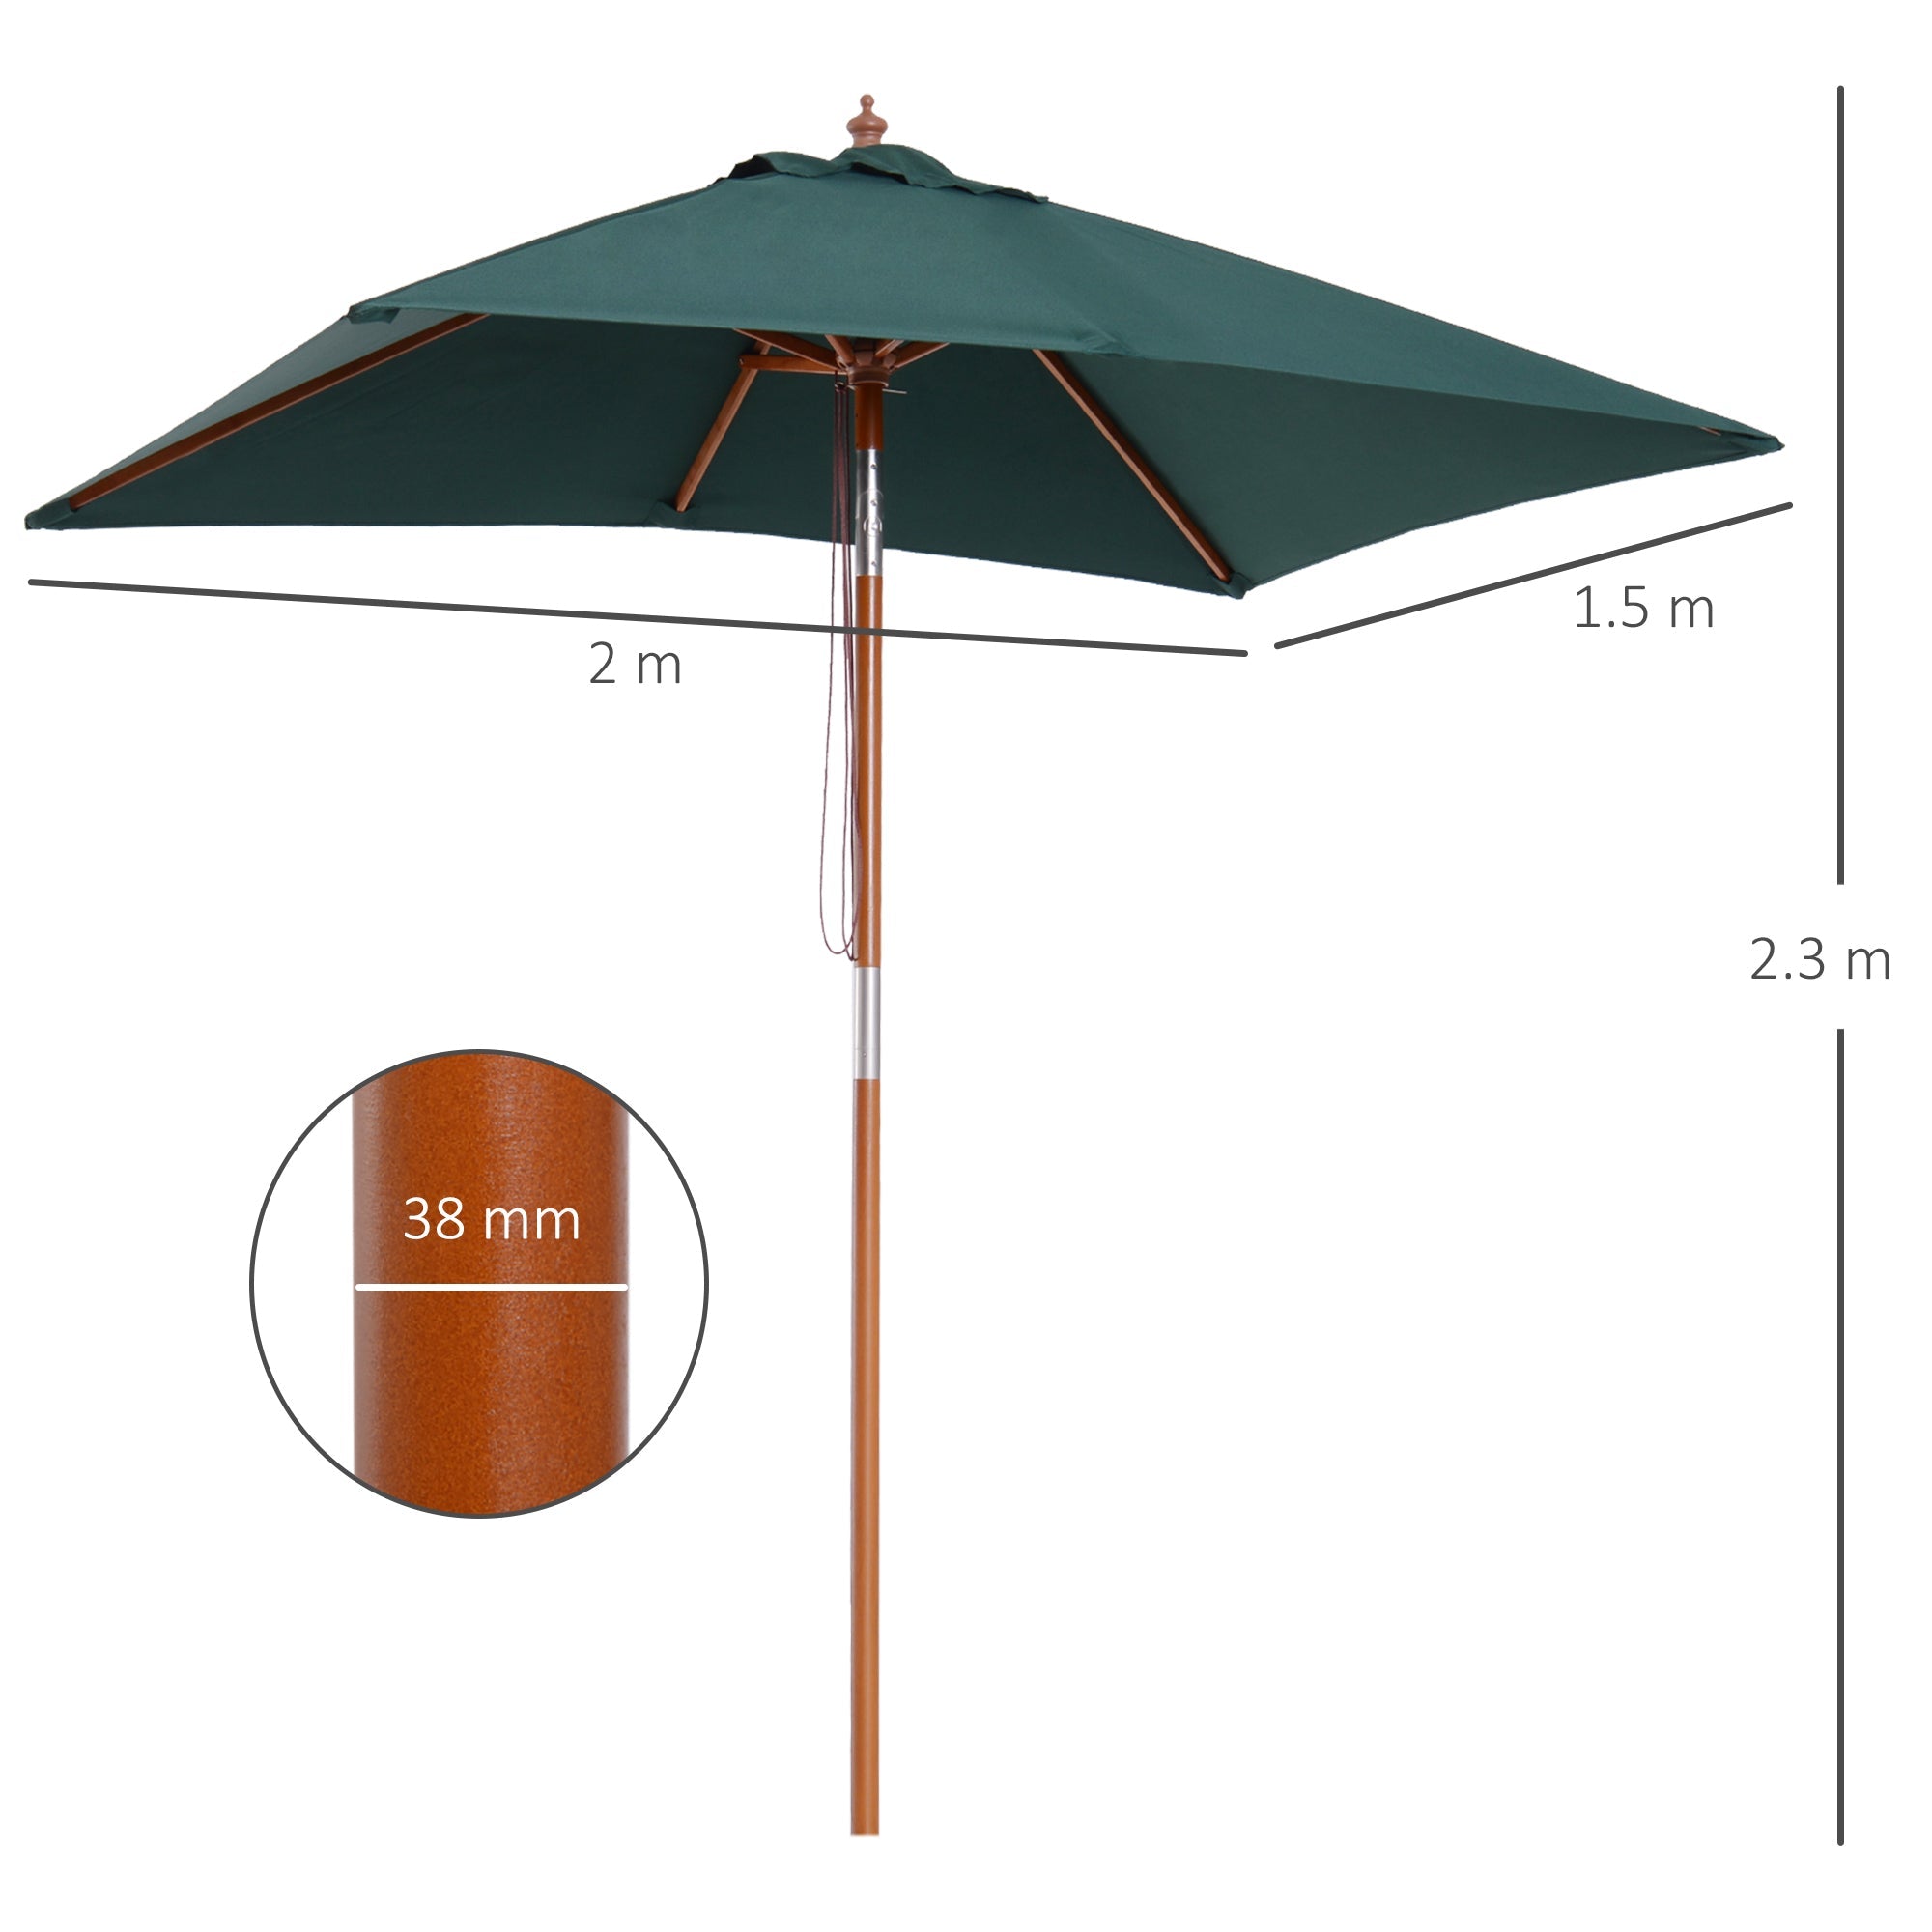 Outsunny Garden Umbrella Patio Umbrella Market Parasol, Outdoor Sunshade 6 Ribs w/ Wood and Bamboo Frame, Brown Green - TovaHaus